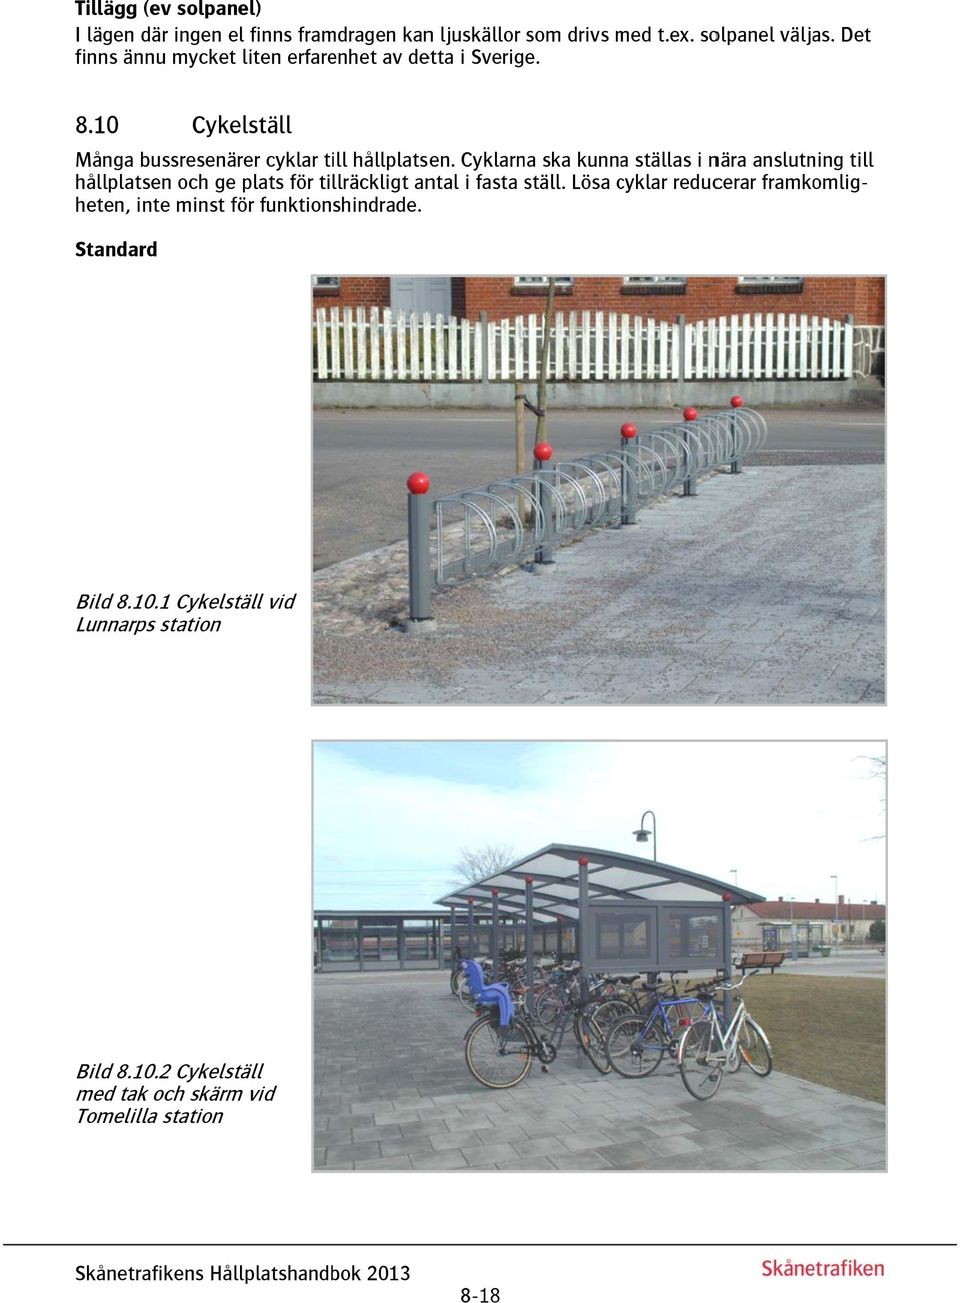 Cyklarna ska kunnaa ställas i nära anslutning till hållplatsen och ge plats för tillräckligt antal i fasta ställ.